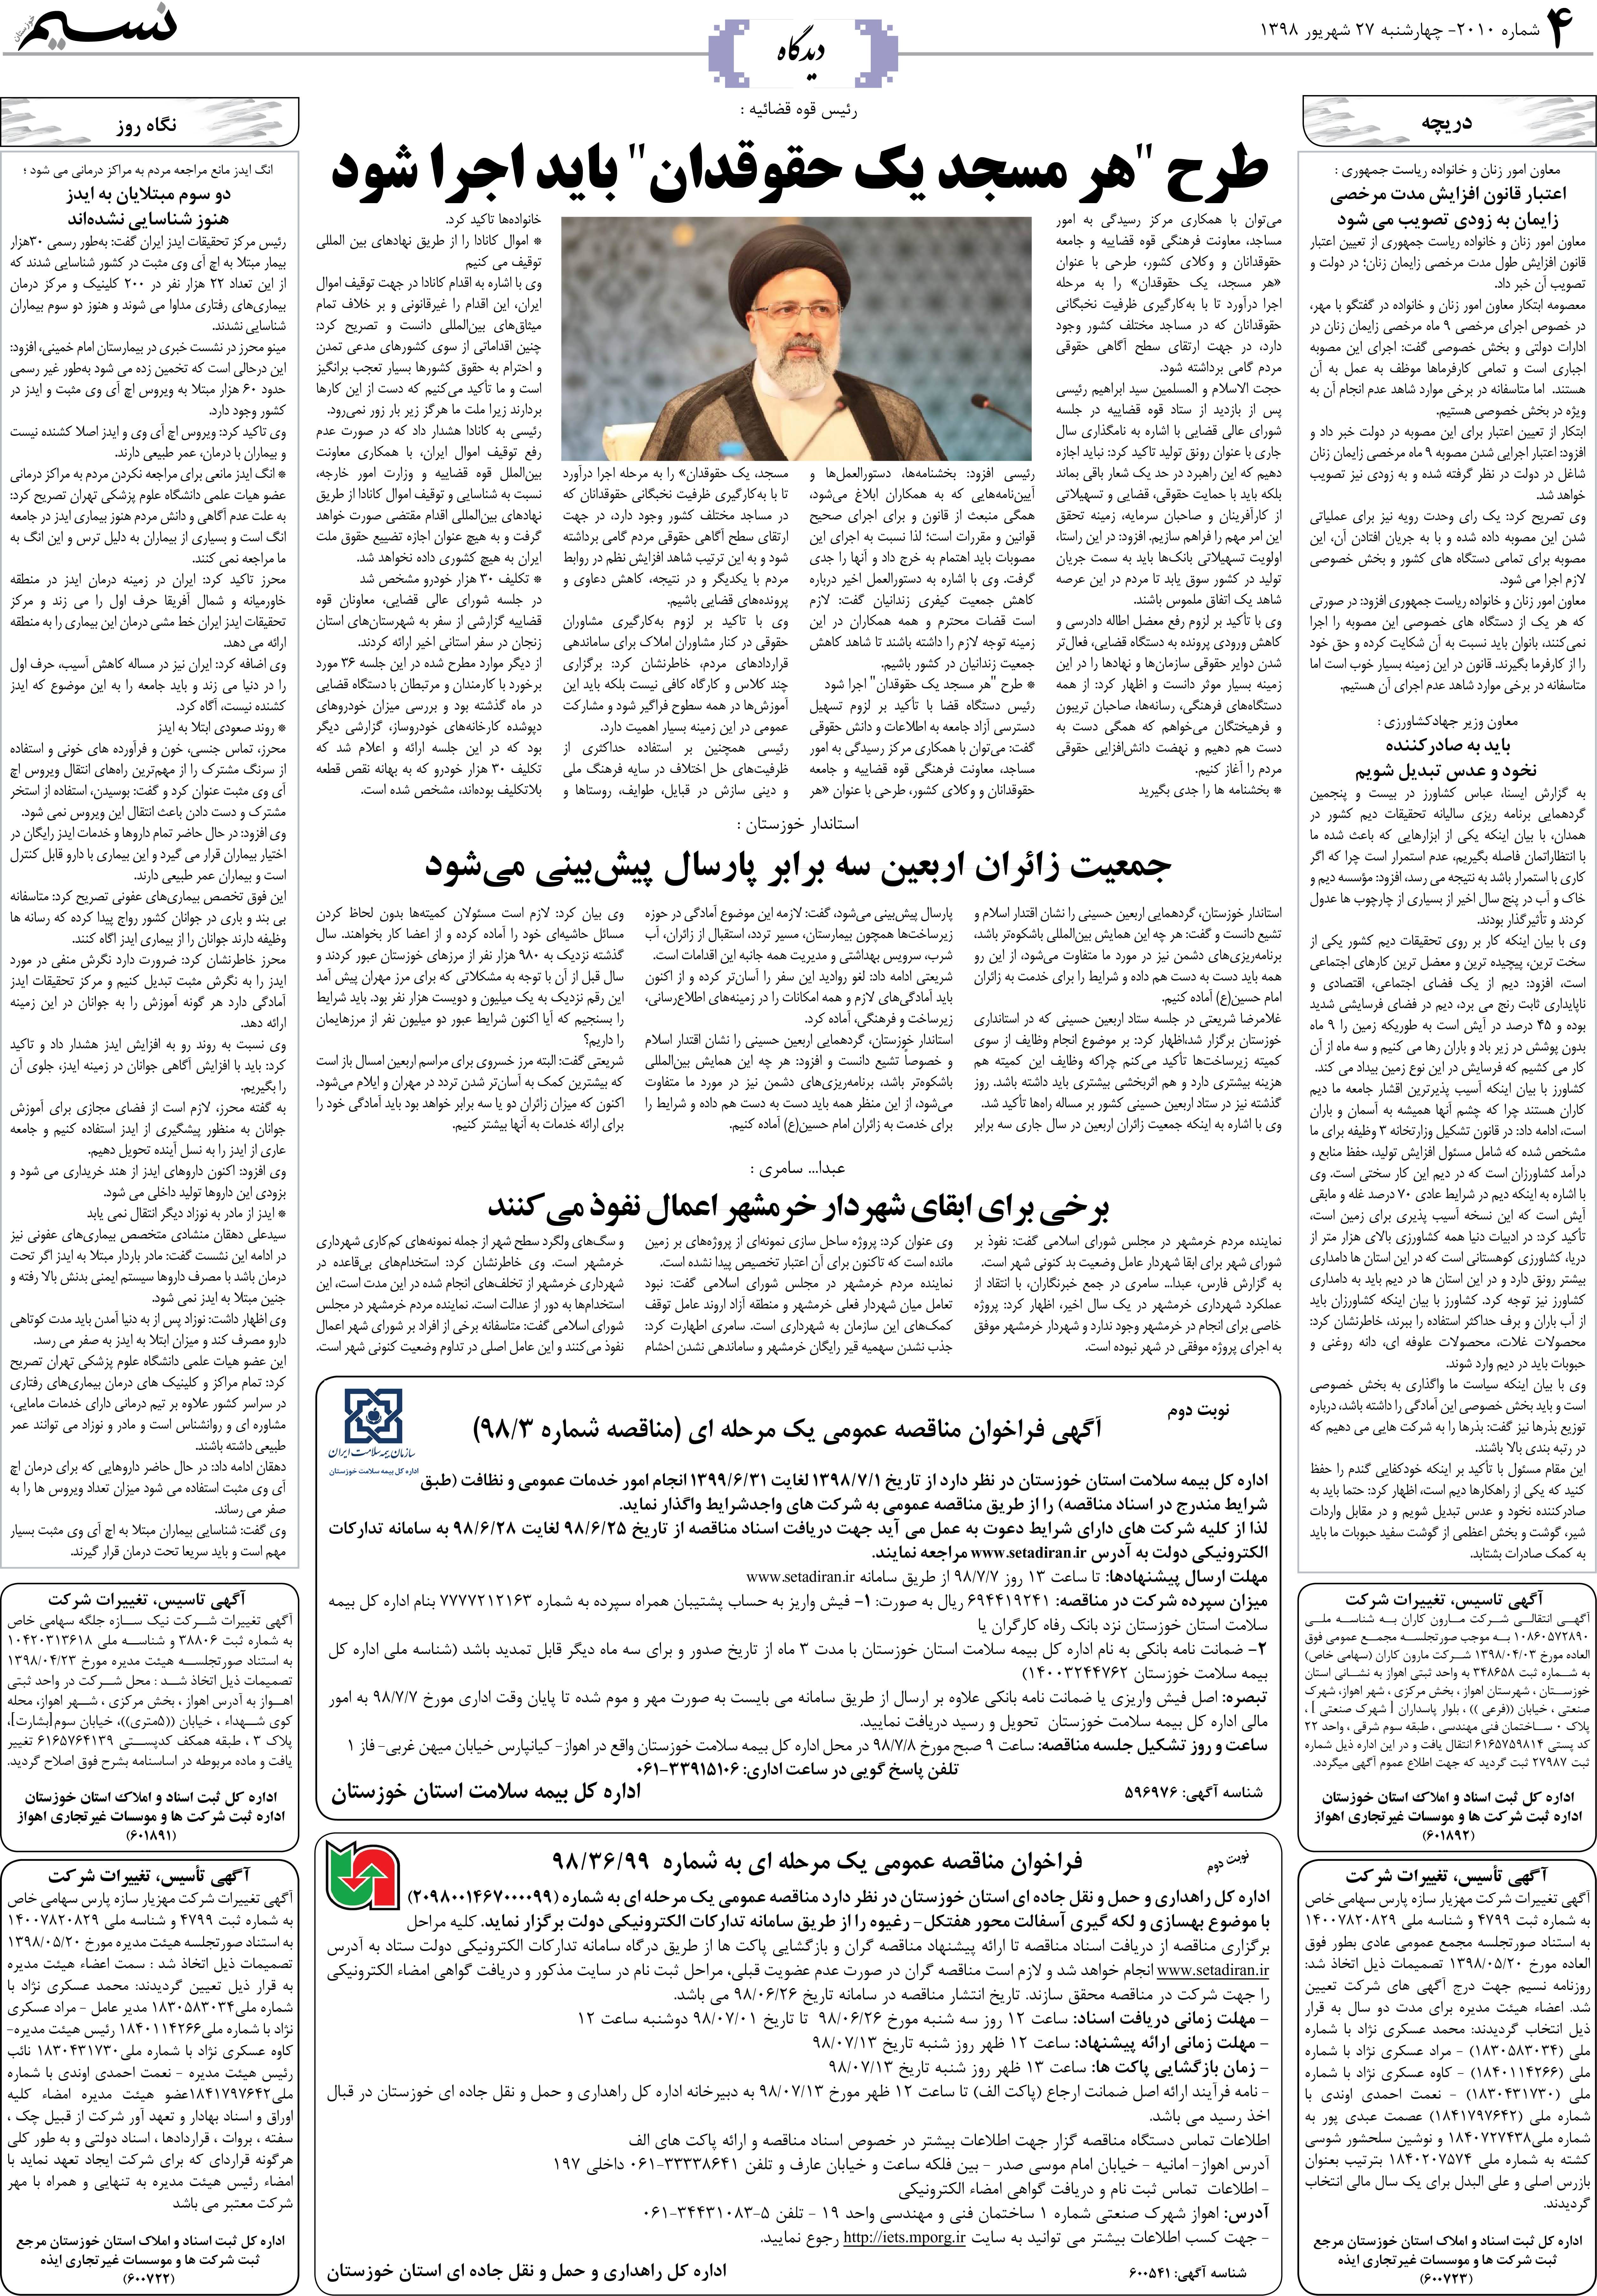 صفحه دیدگاه روزنامه نسیم شماره 2010